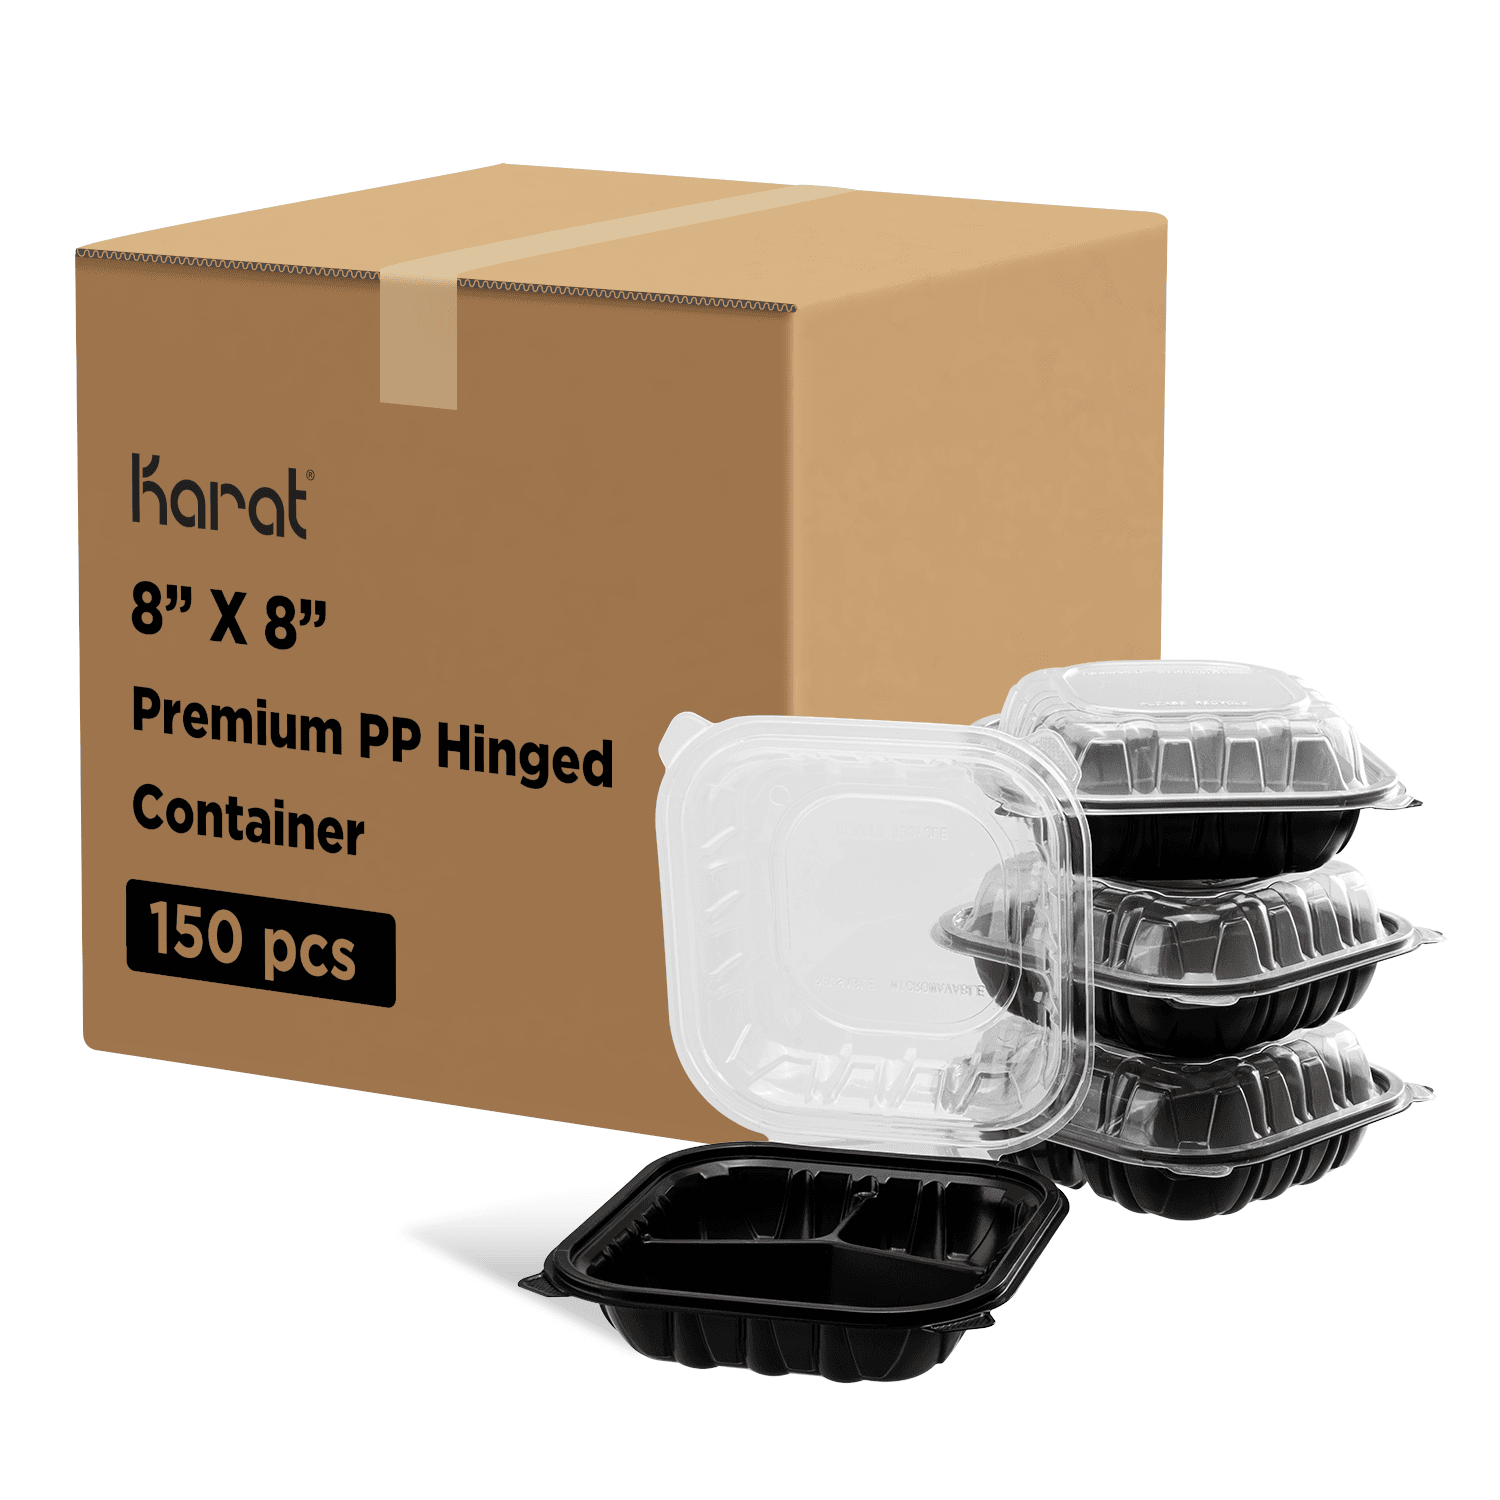 Karat 8"x 8" Premium PP Hinged Container, 3 compartments - 150 pcs